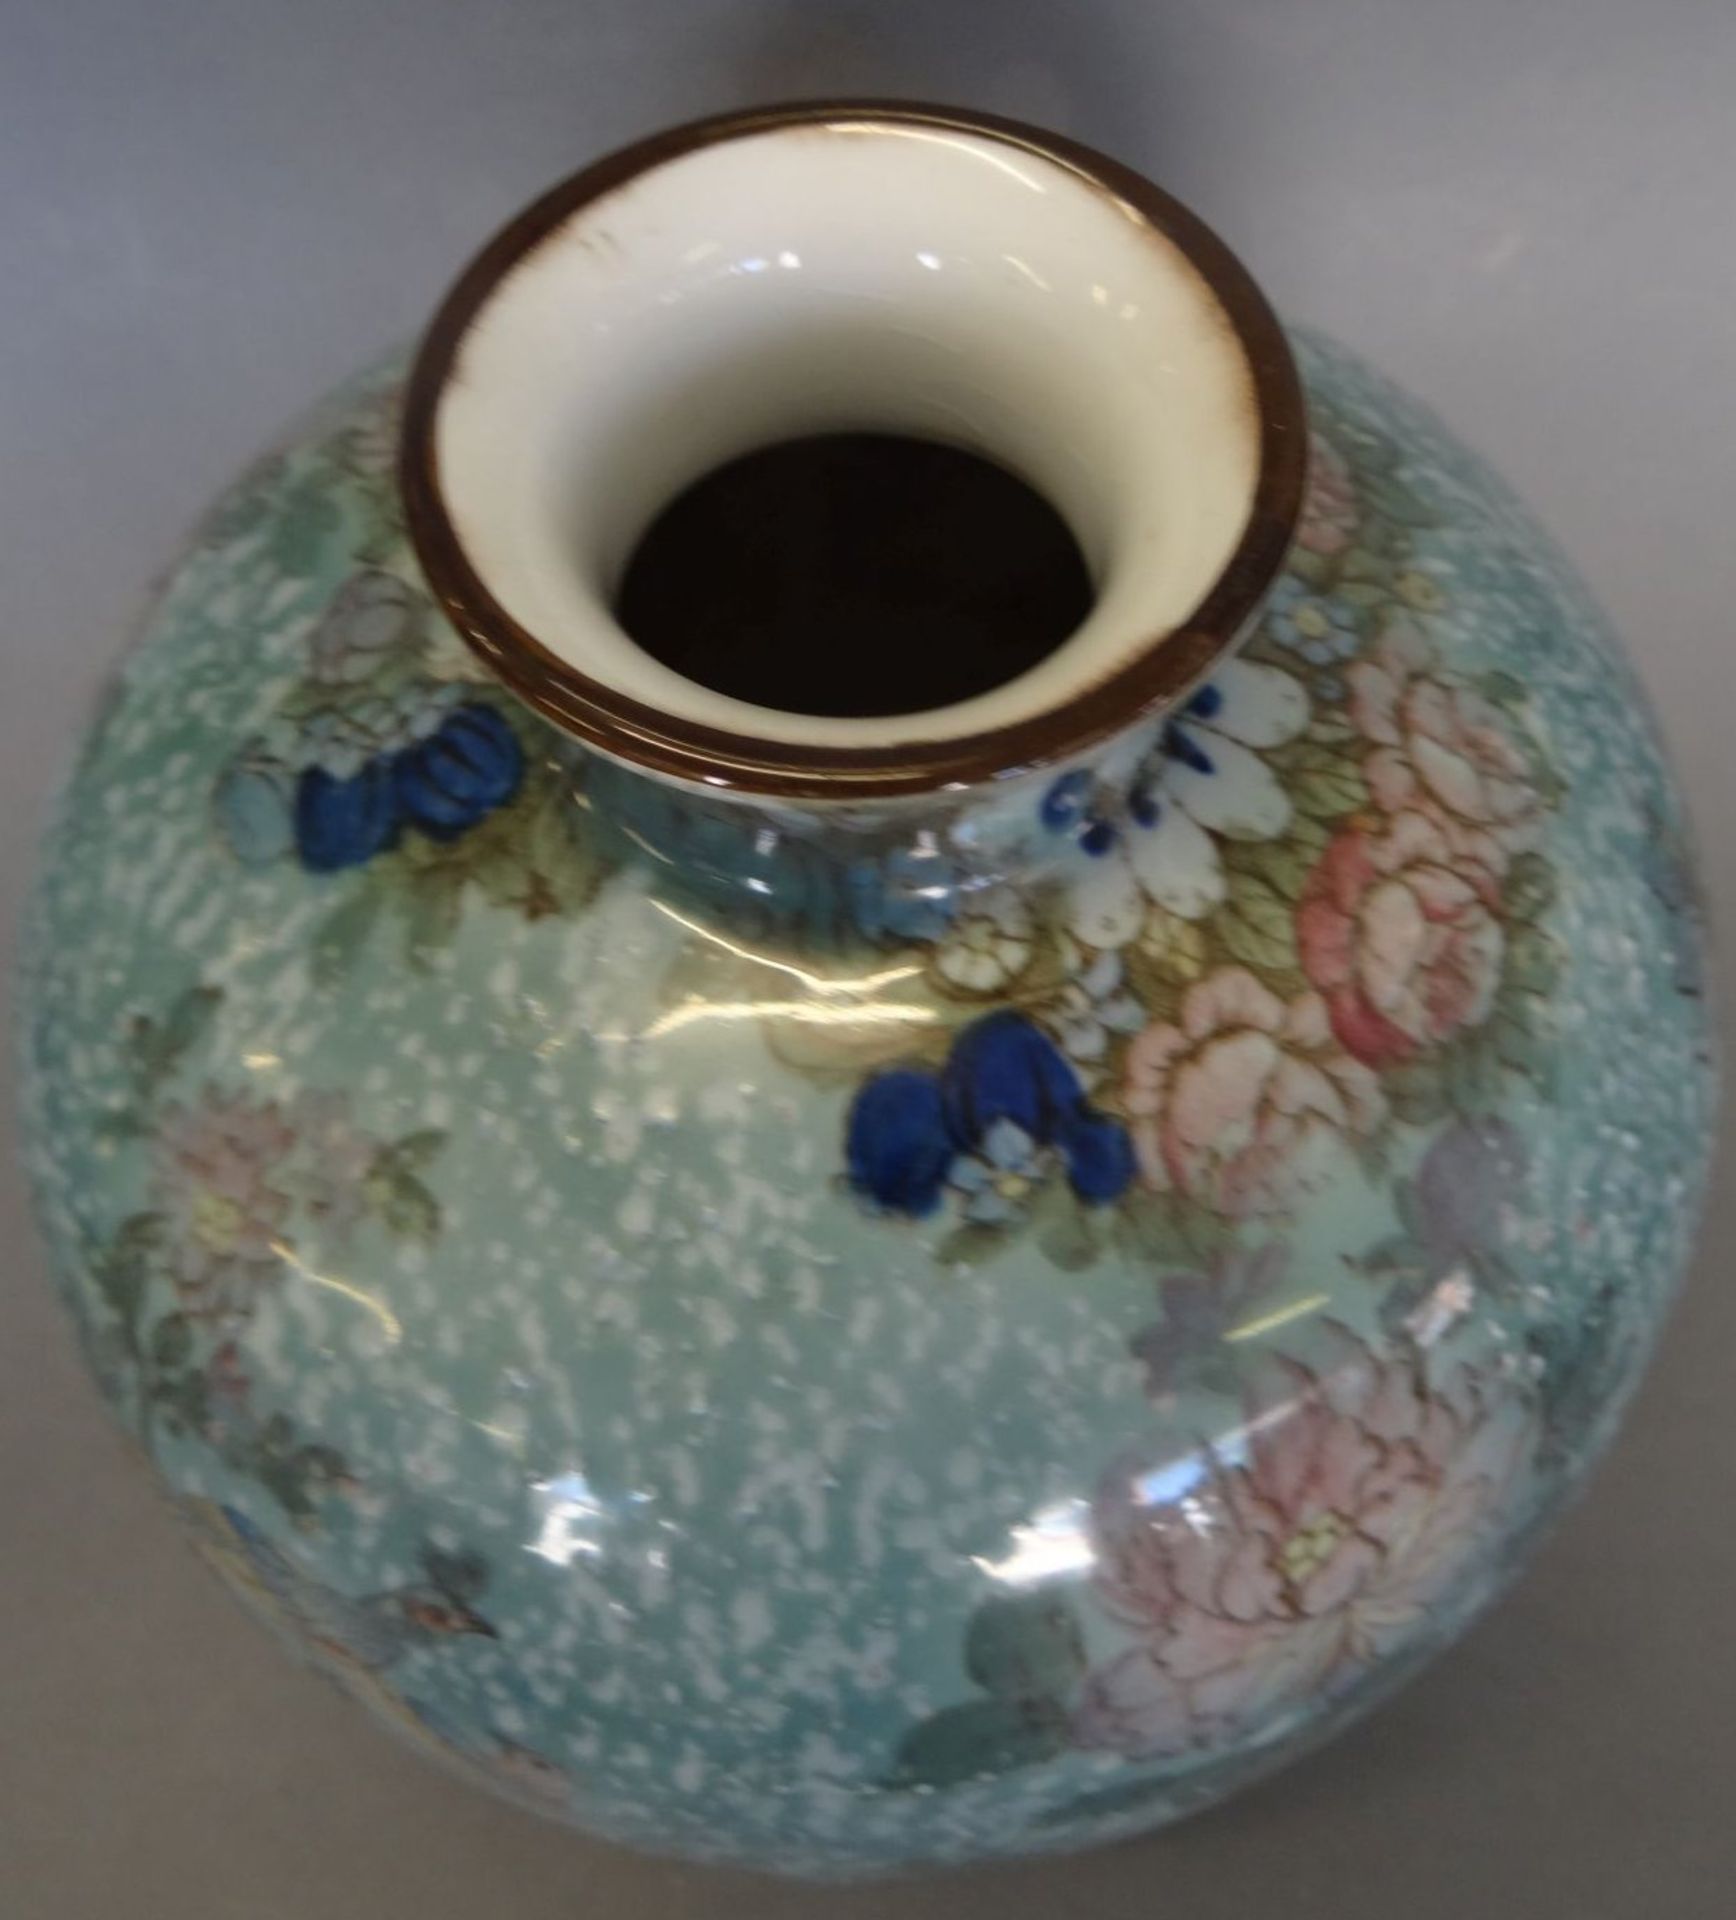 bauchige Vase, fein bemalt mit Vogelpaar und Blumen, in Boden undeutliche Pressmarke und div. Numme - Bild 2 aus 5